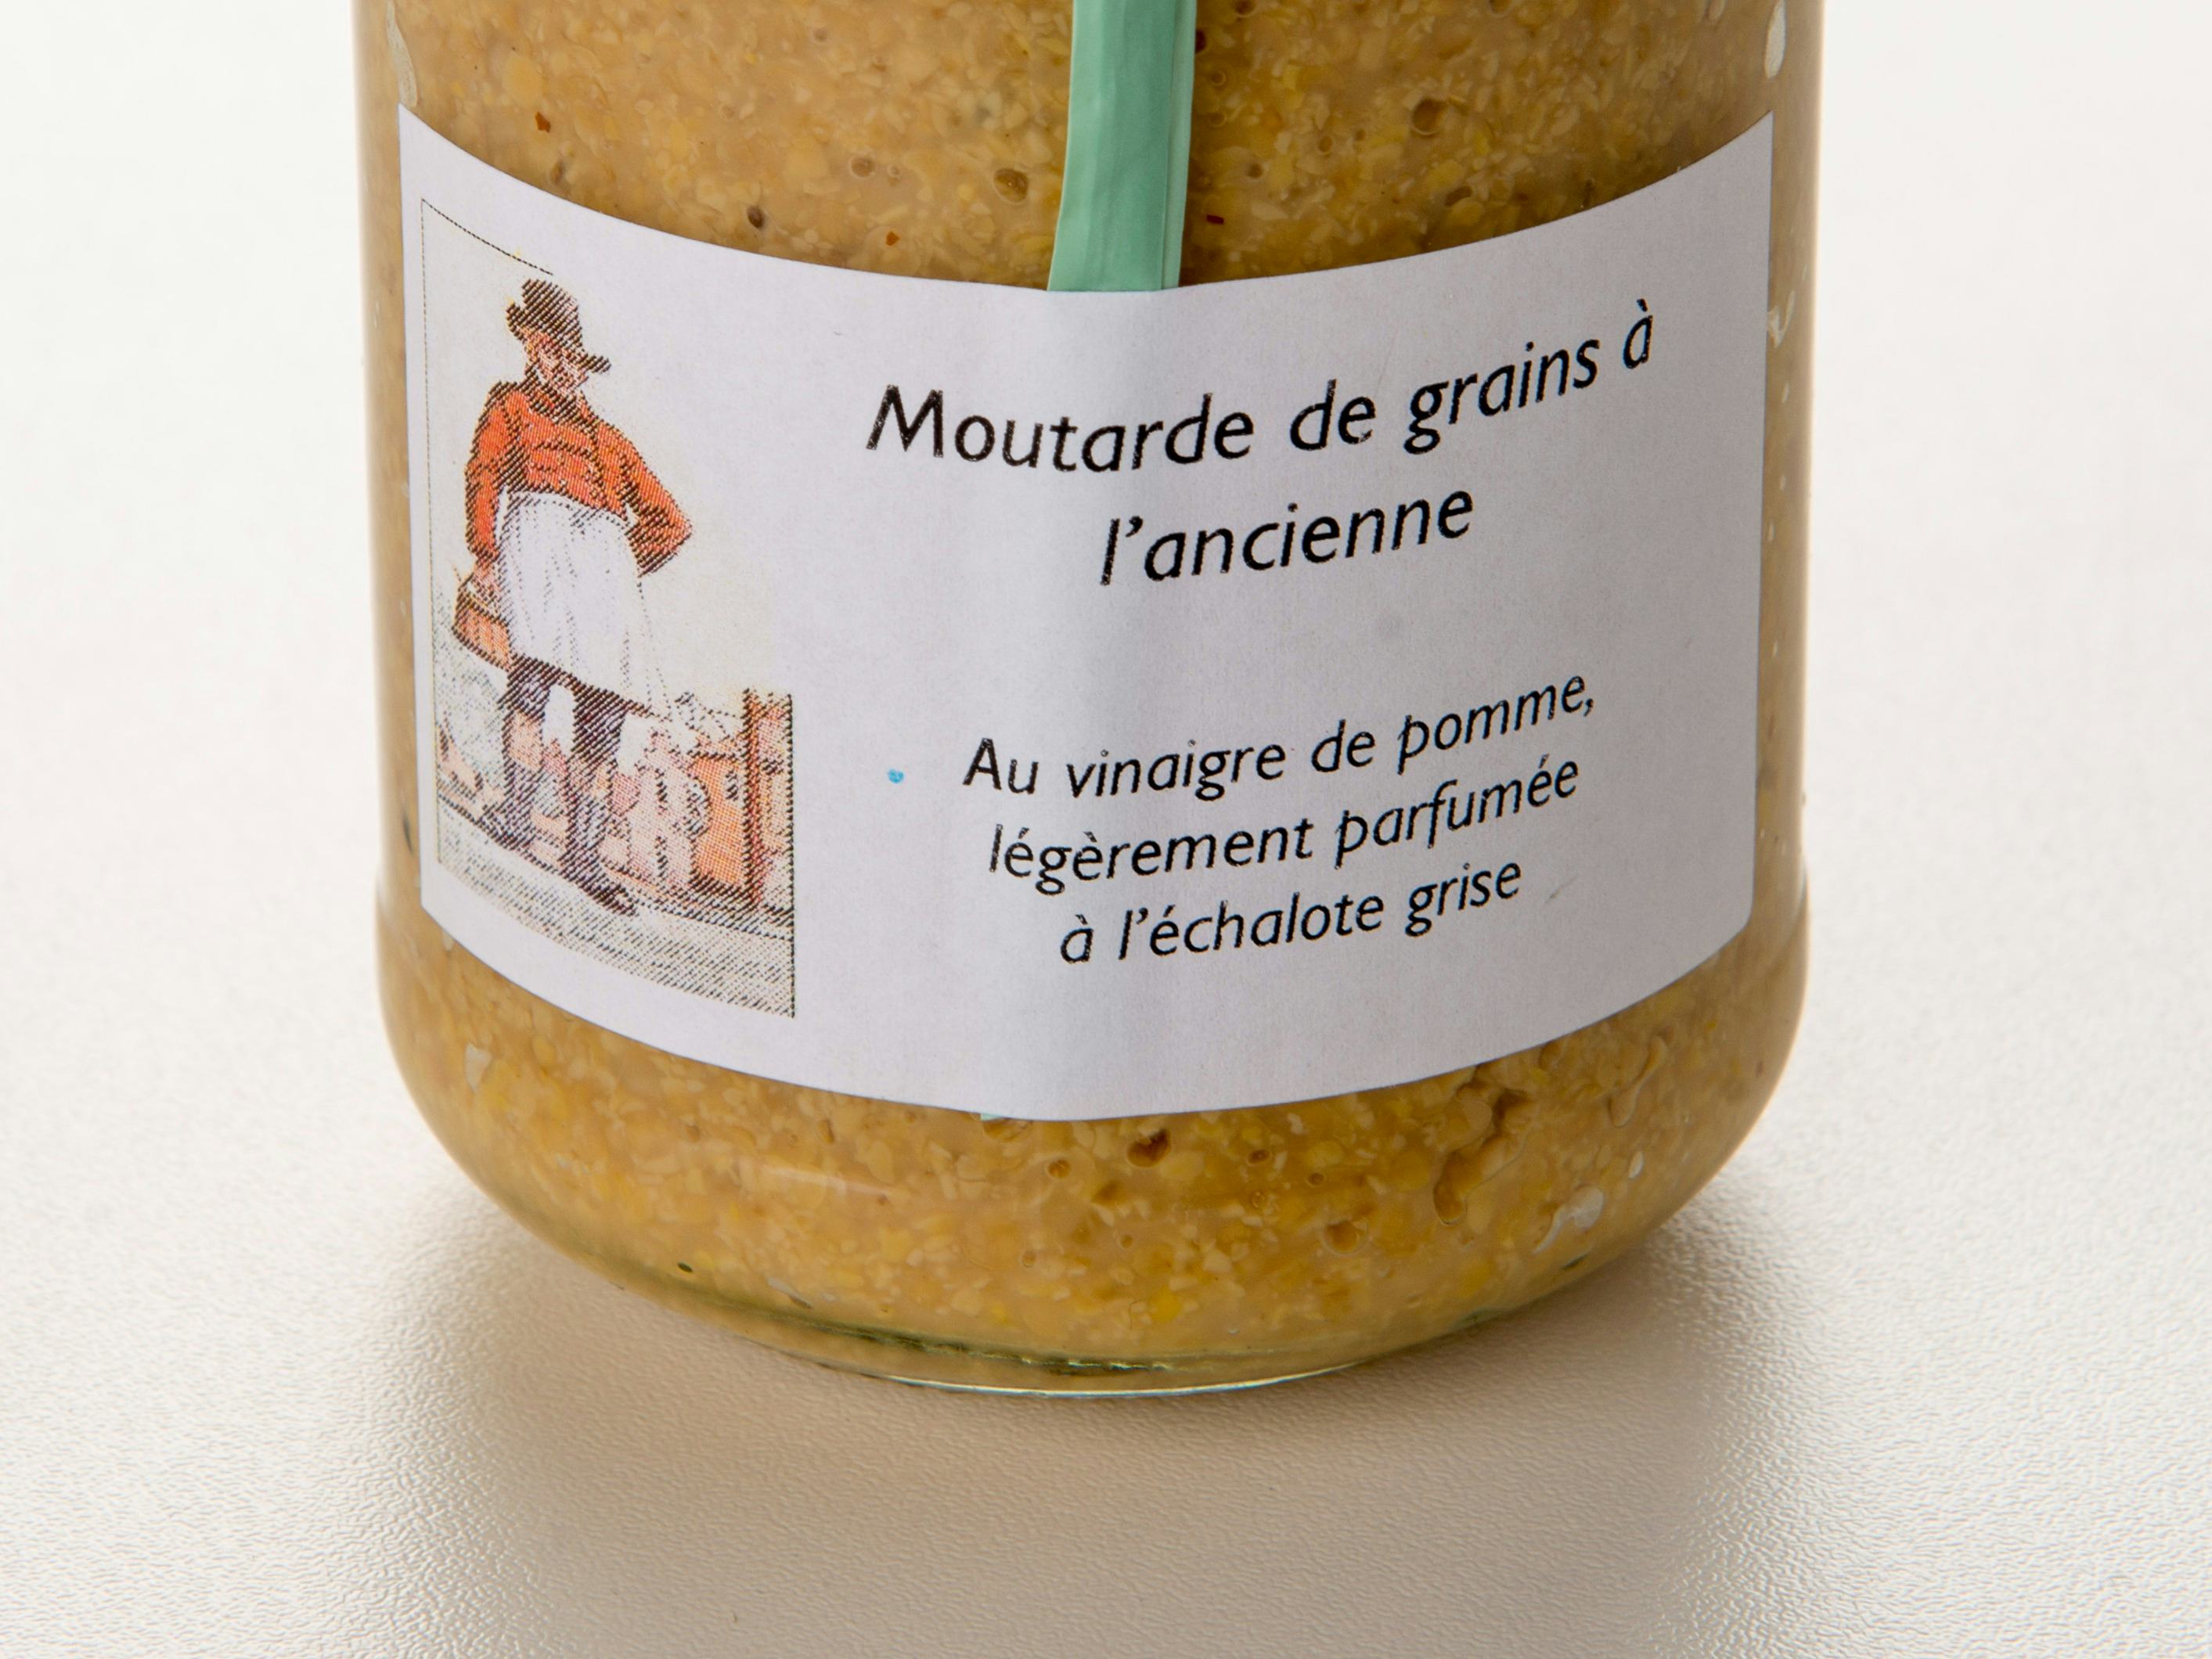 Senf mit Schalotte, Vinaigrerie-Moutarderie du Grand-Pré, Hautemorges, image 1 | Mimelis